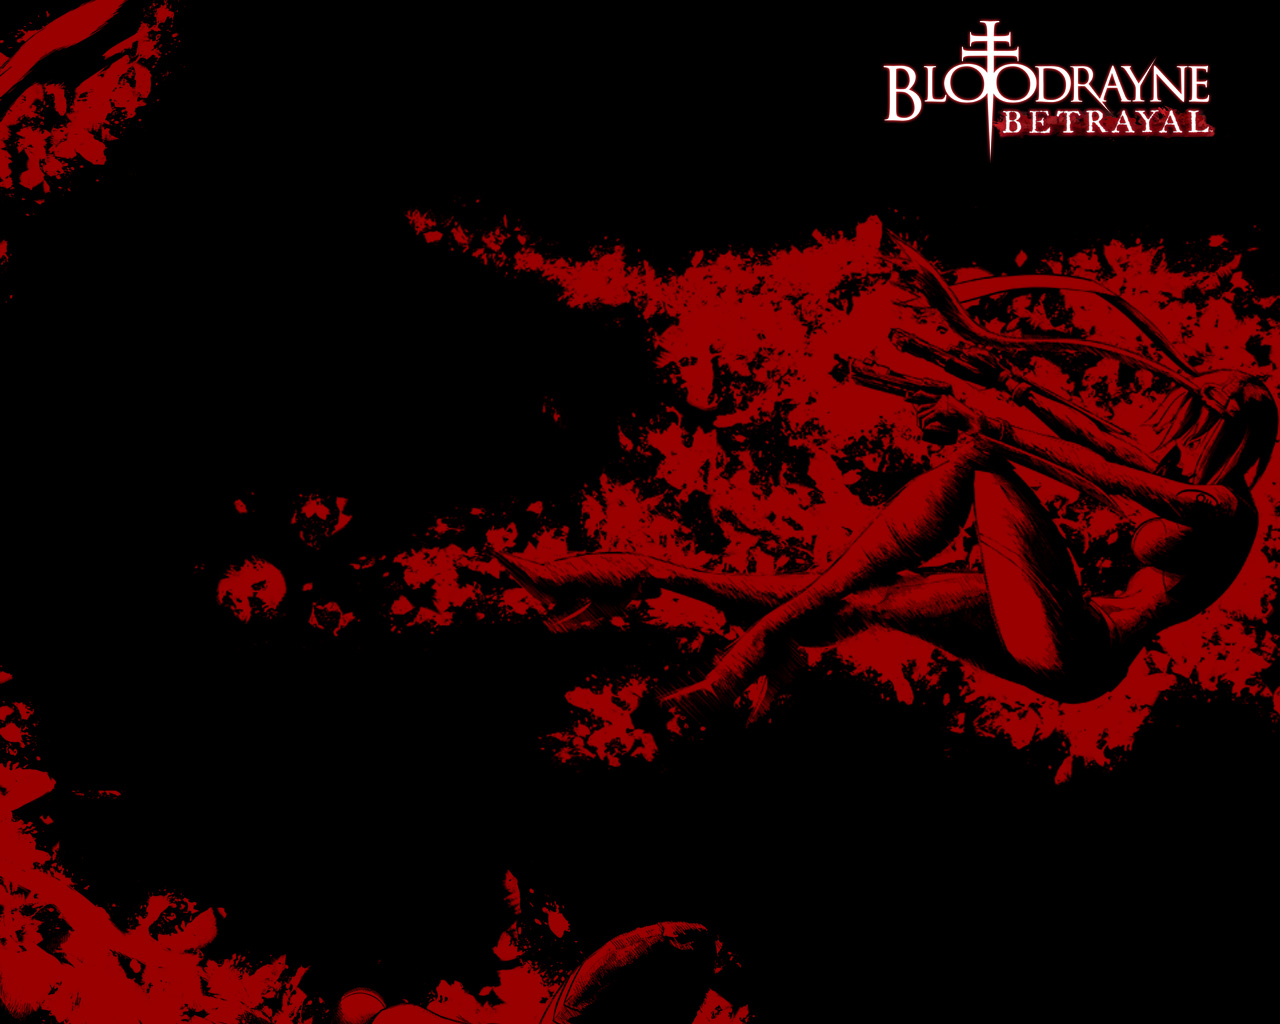 Melhores papéis de parede de Bloodrayne: Betrayal para tela do telefone